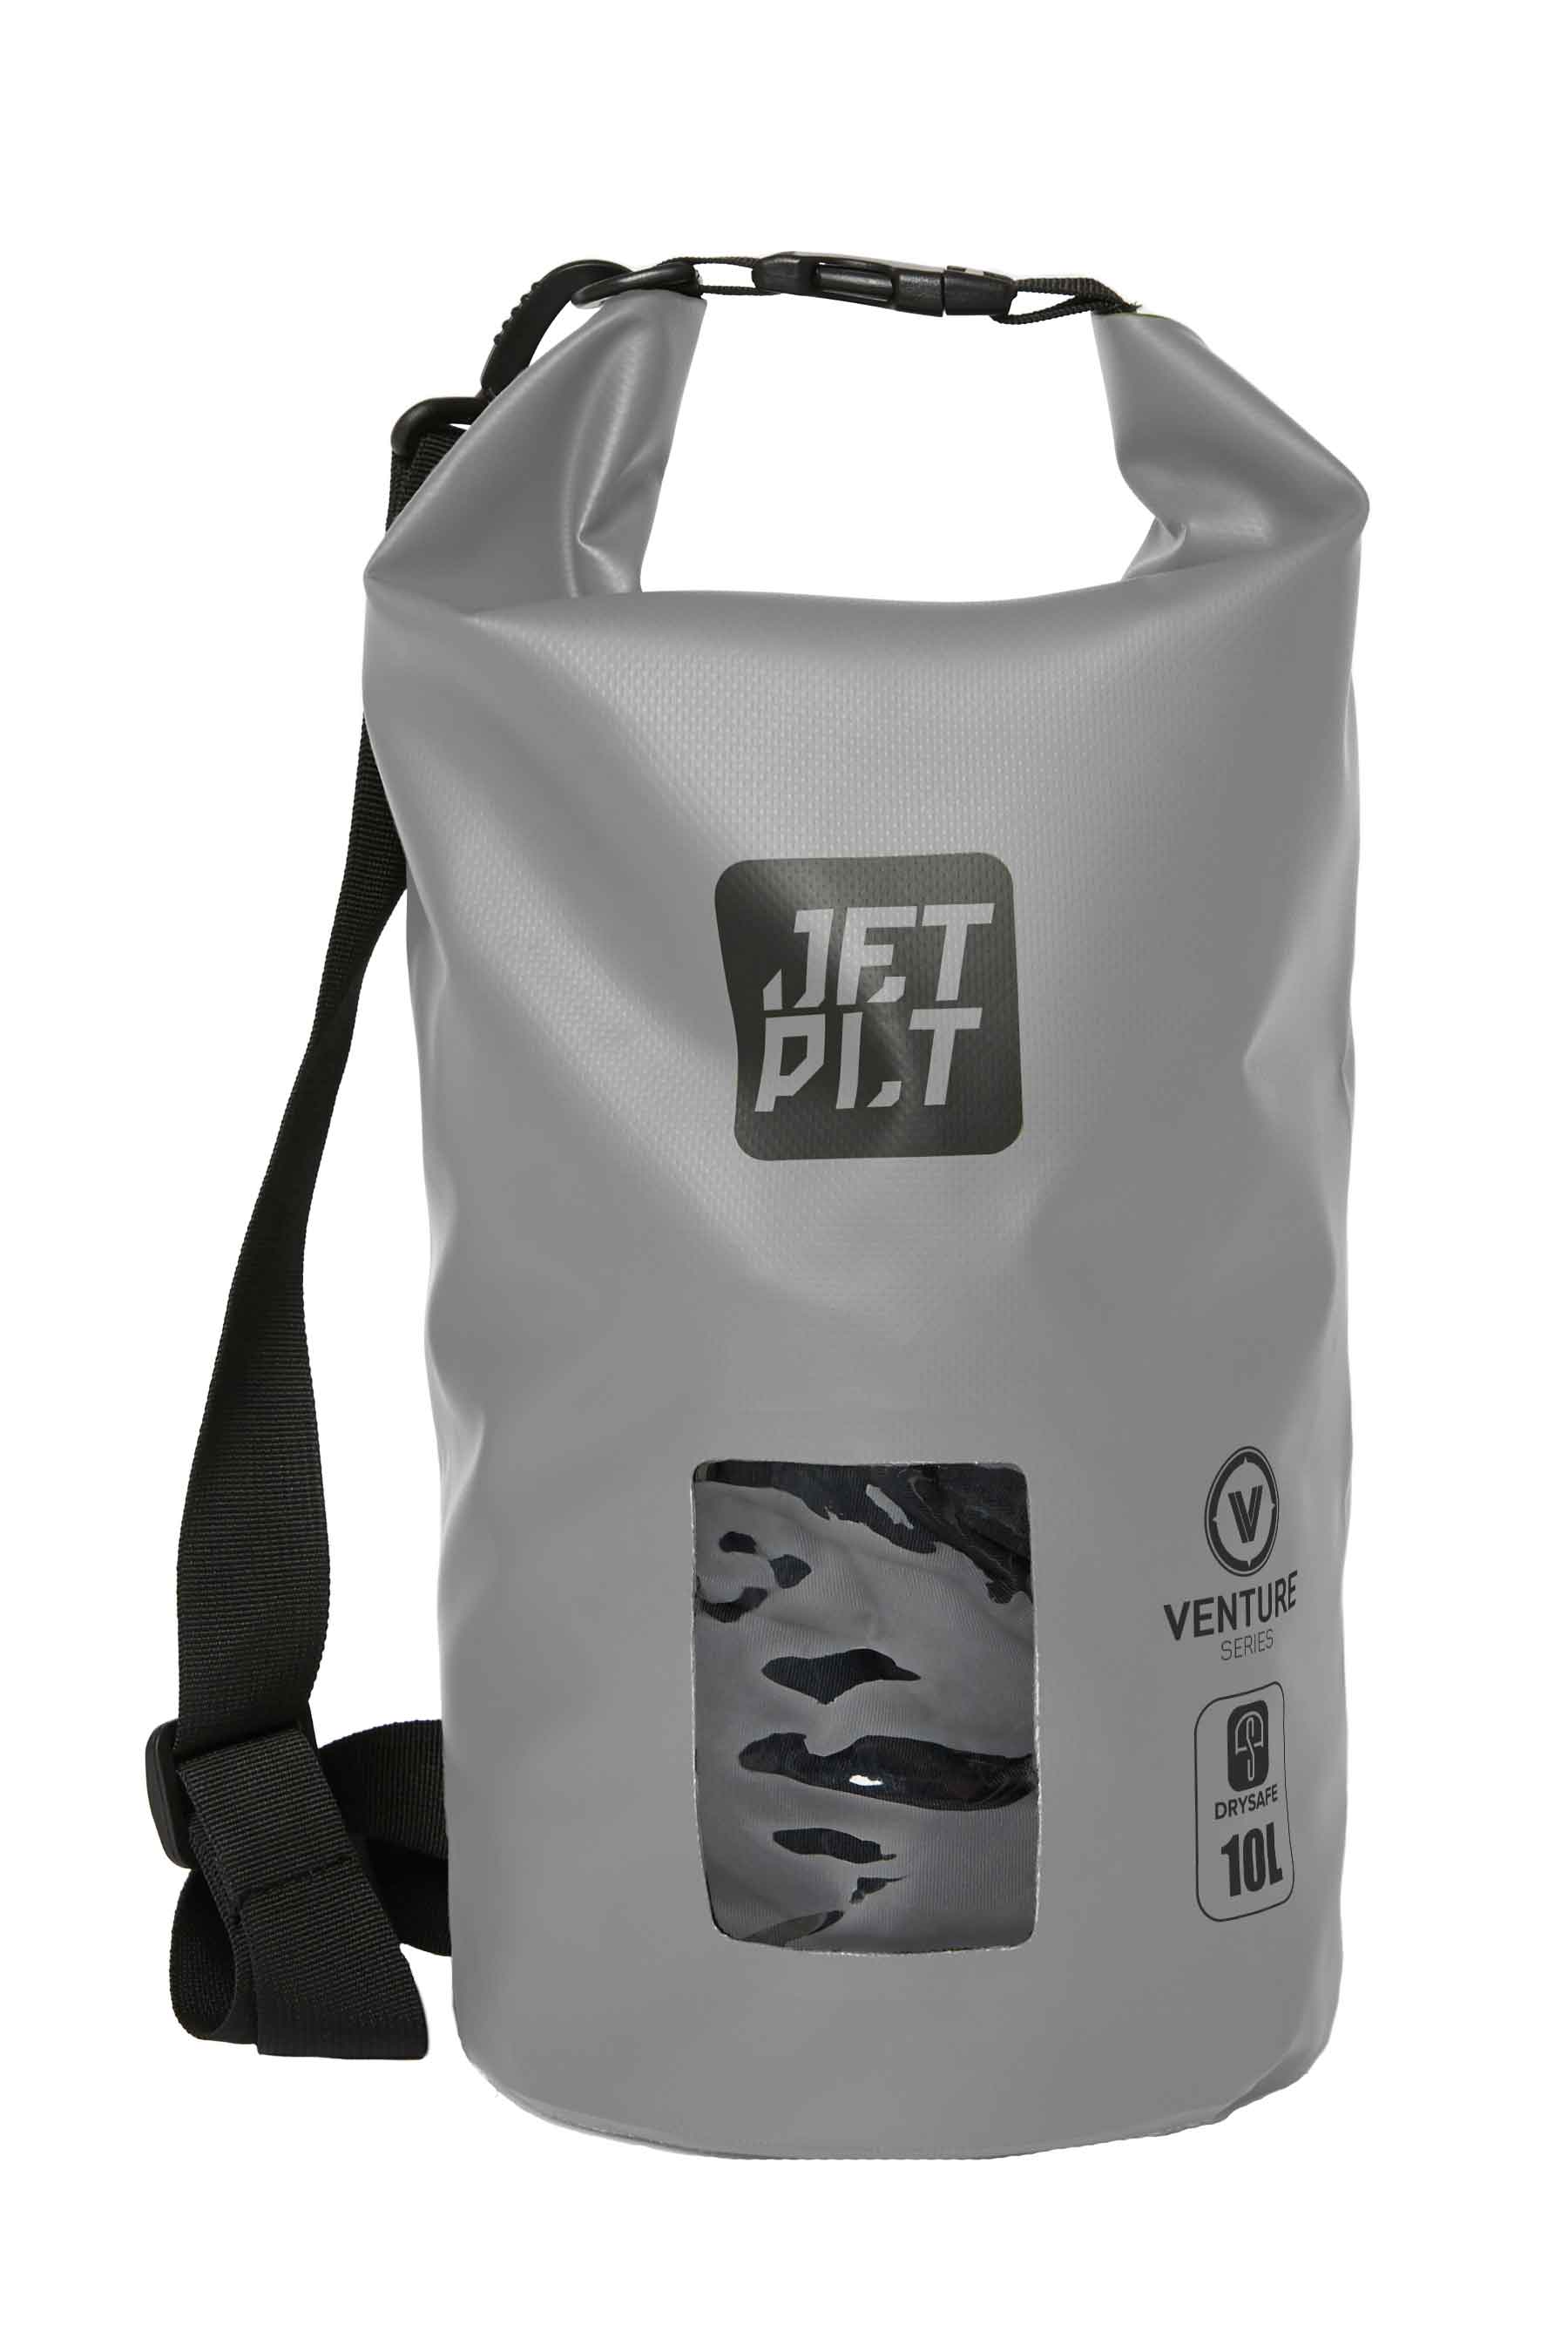 Jetpilot Venture 10l Drysafe Backpack - Grey